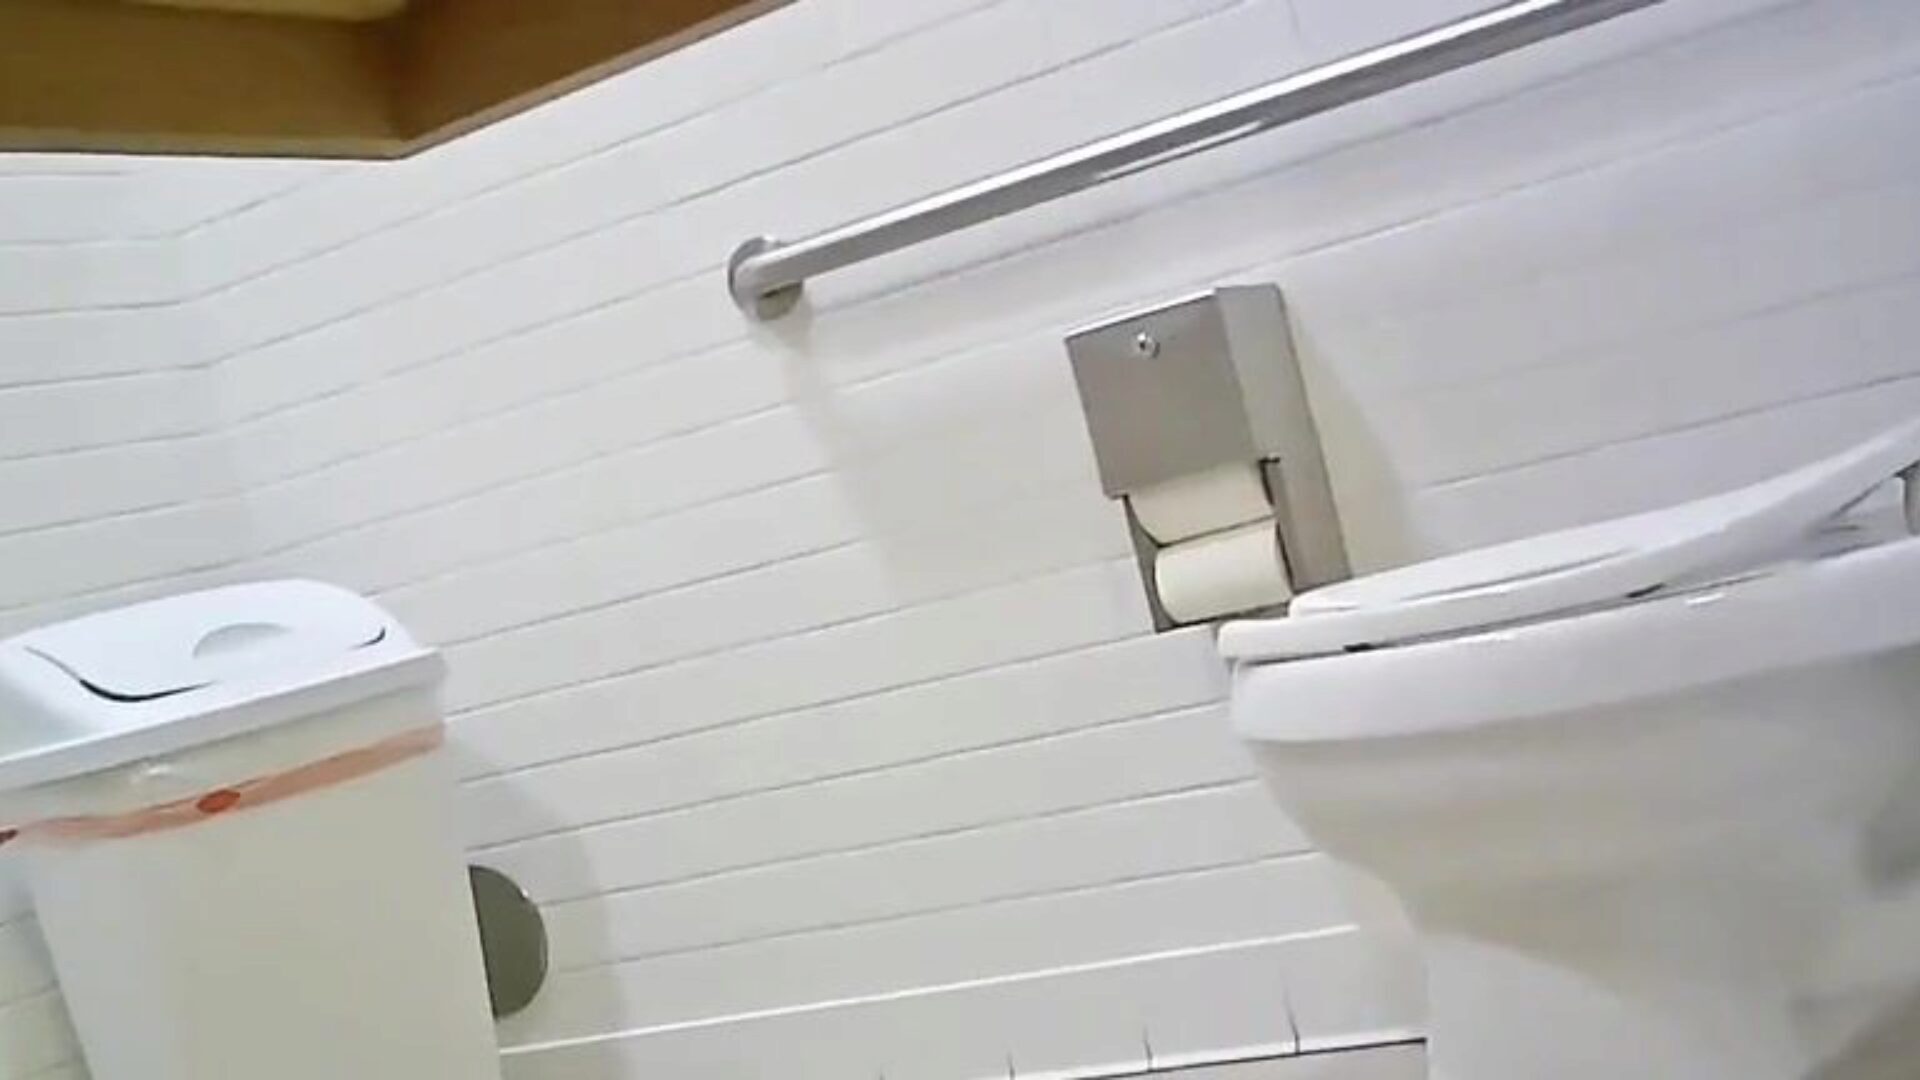 隐藏式厕所摄像头-适合帅哥理想的gazoo检查一下，告诉我您的想法； p’